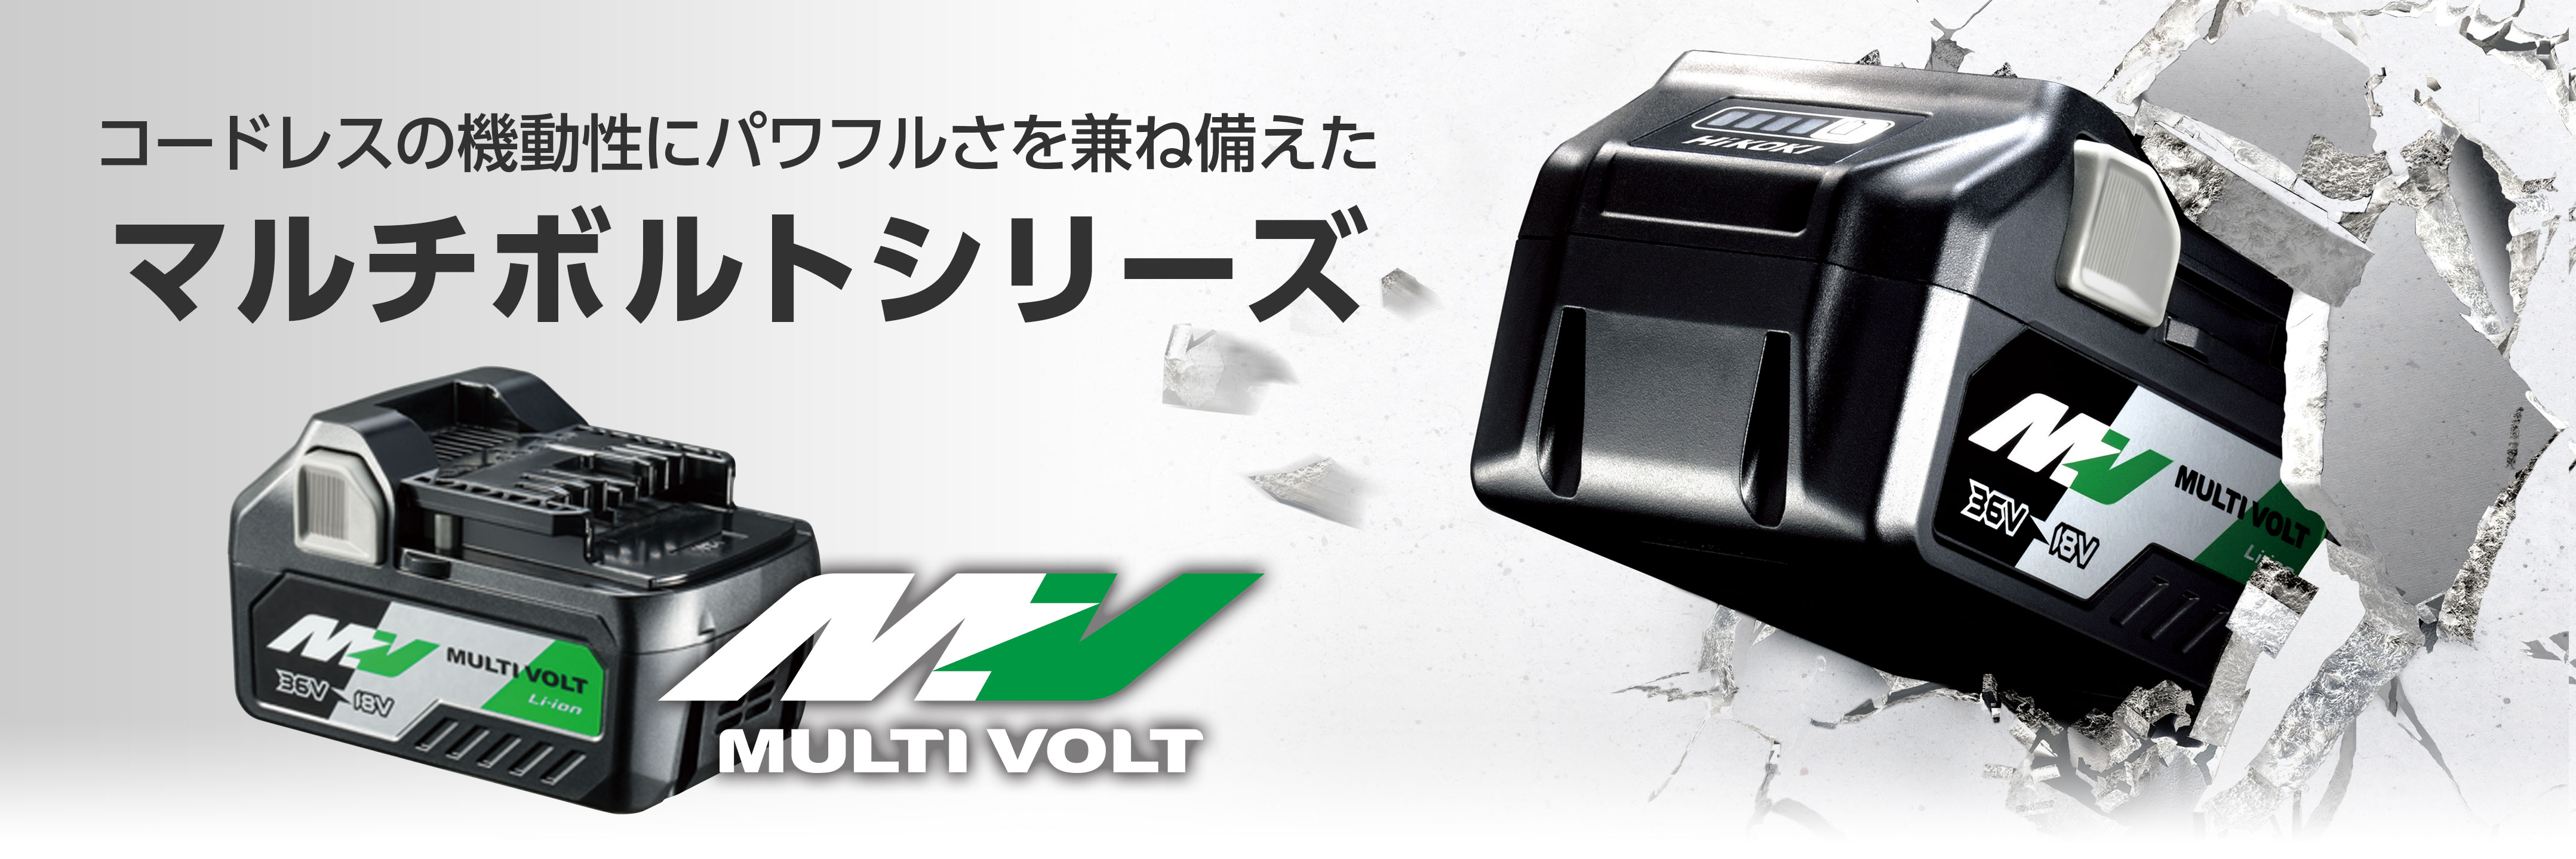 14000円 受賞店 ハイコーキ 36V マルチボルトシリーズ専用 ET36A